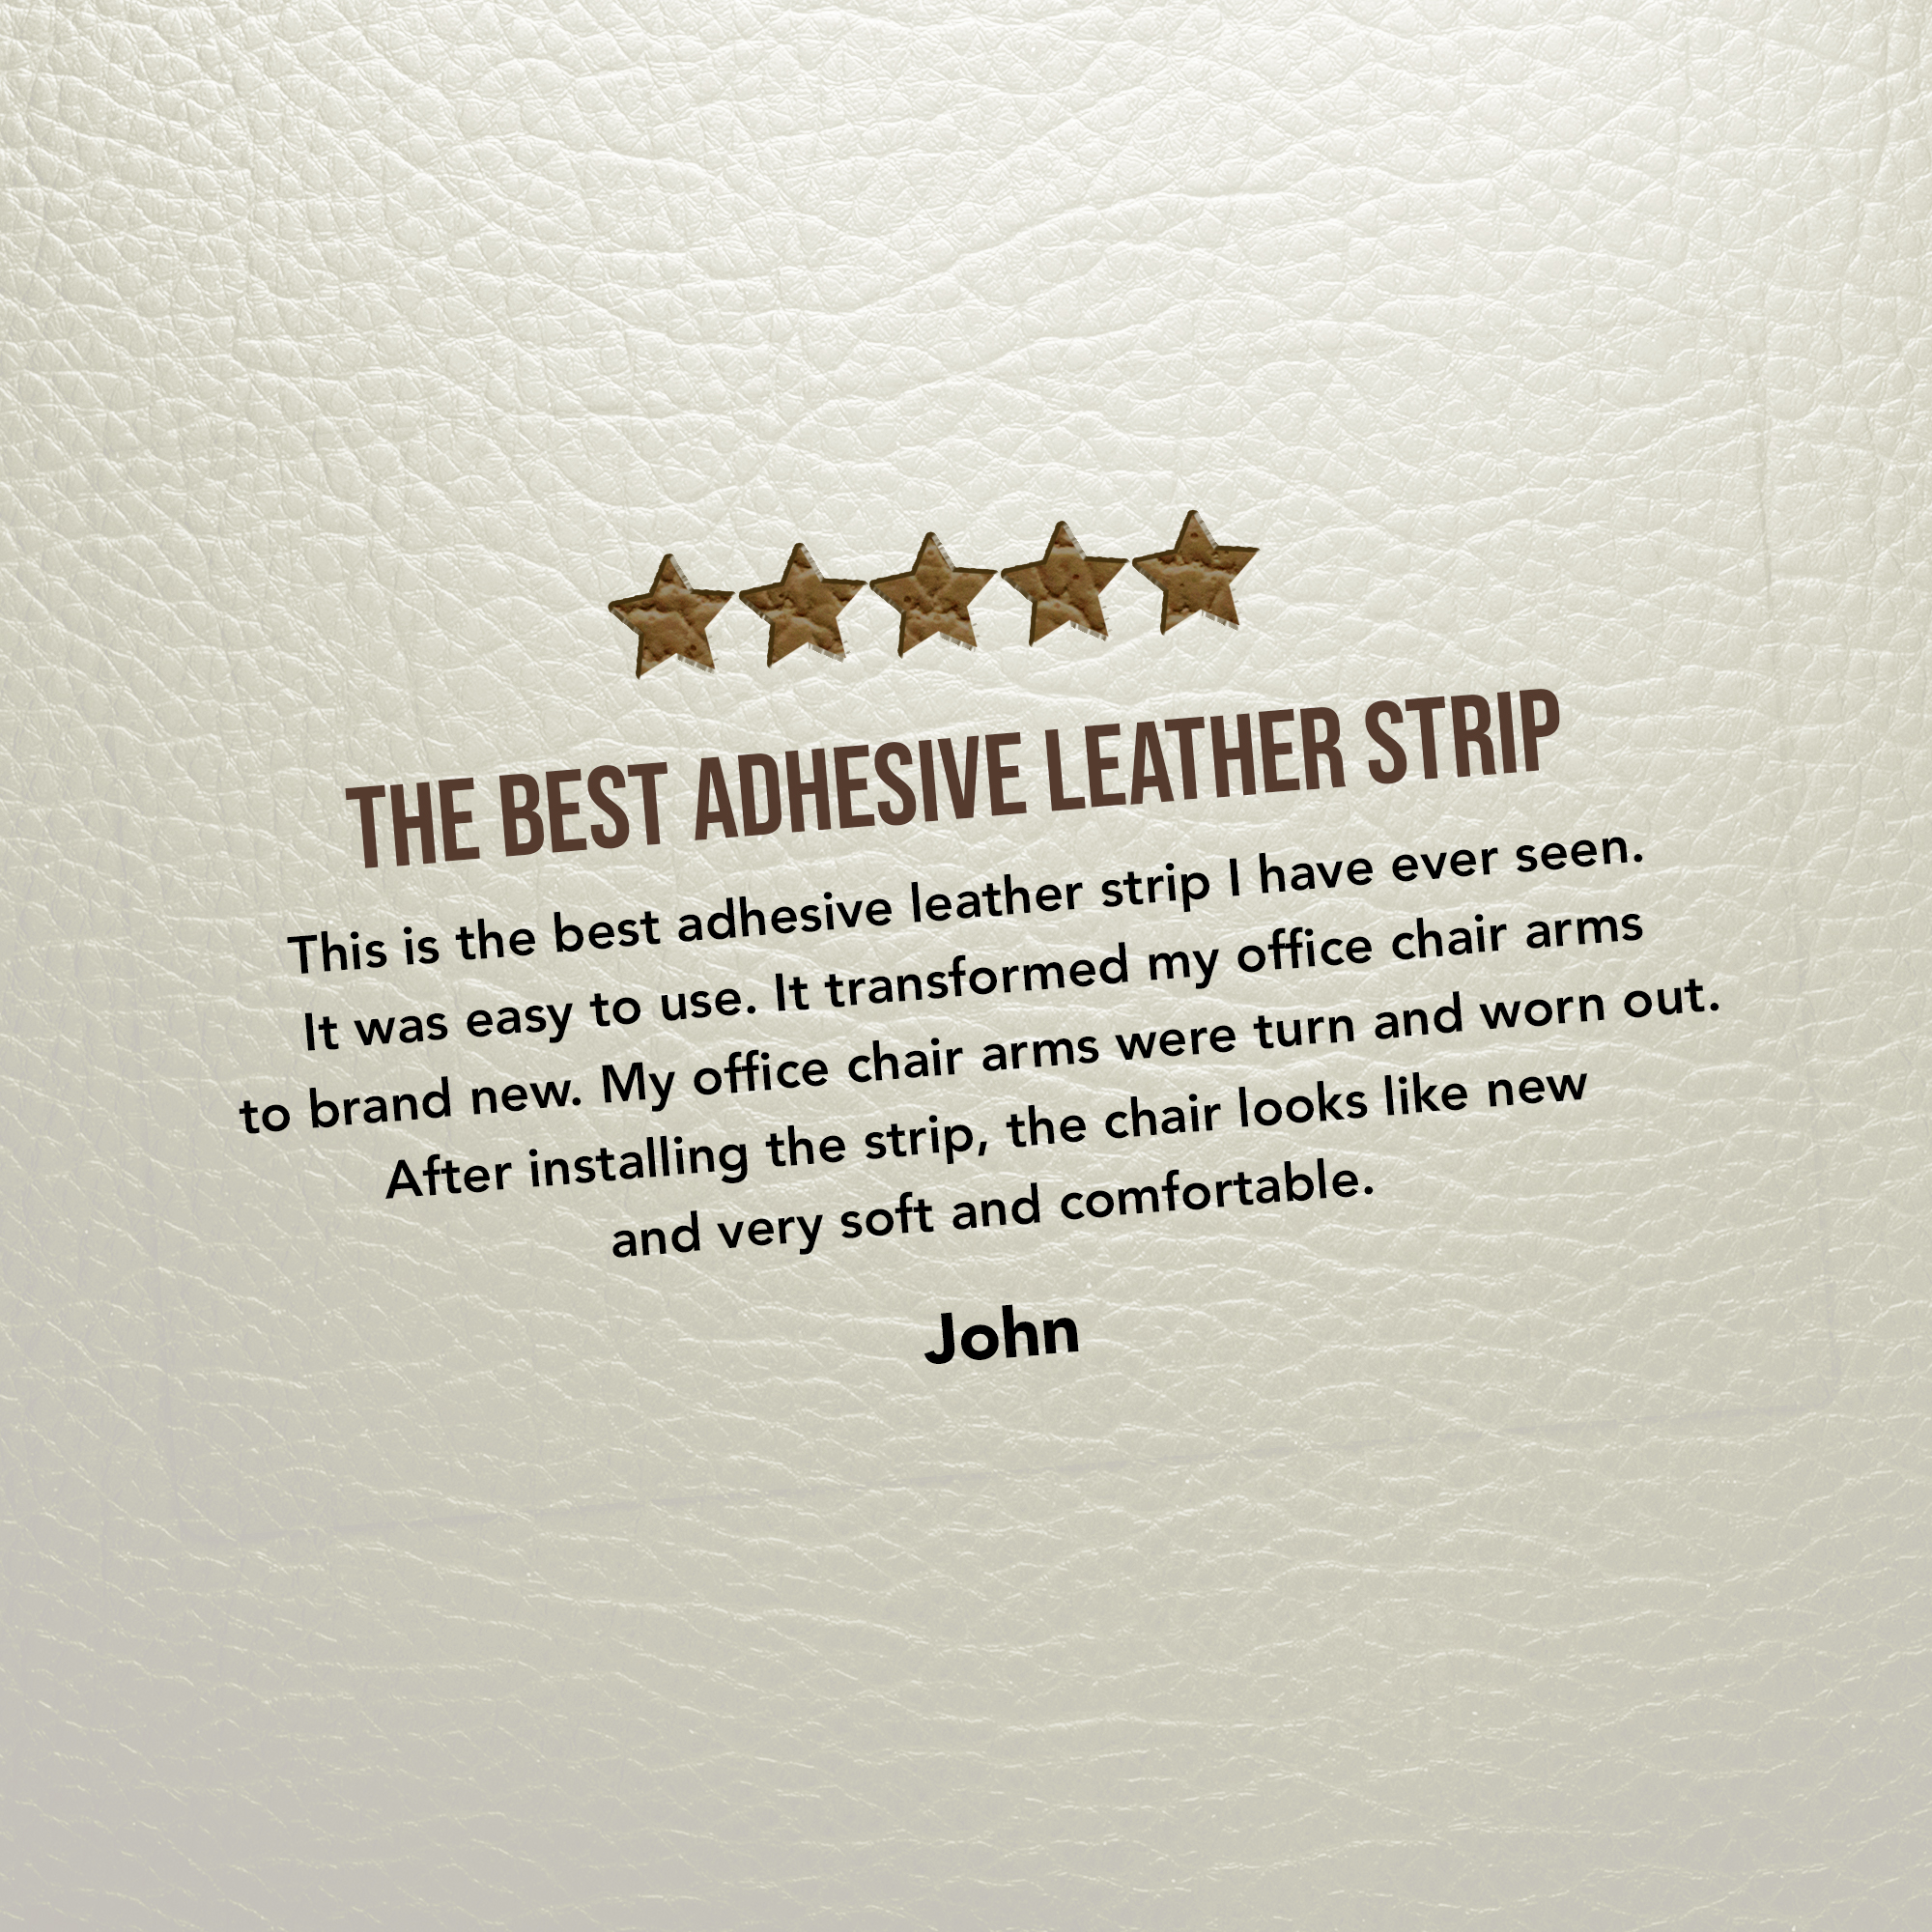 Mastaplasta Self-adhesive Leather Repair Roll 150x10cm / 60x4 Inches 